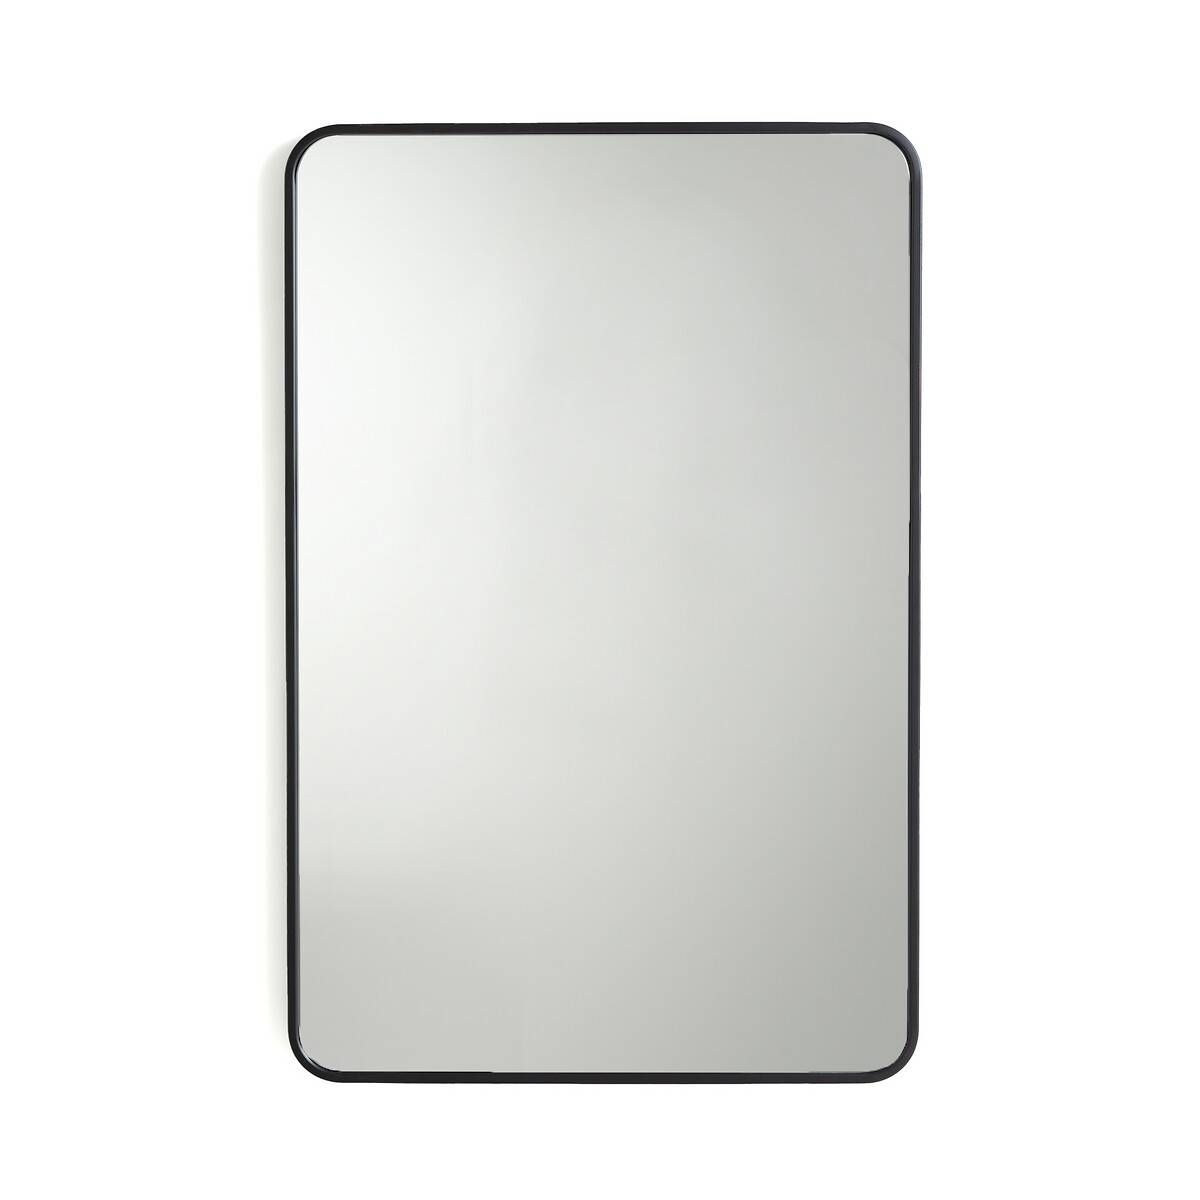 Зеркало с отделкой металлом La Redoute 21 399 руб. 16 049 руб.